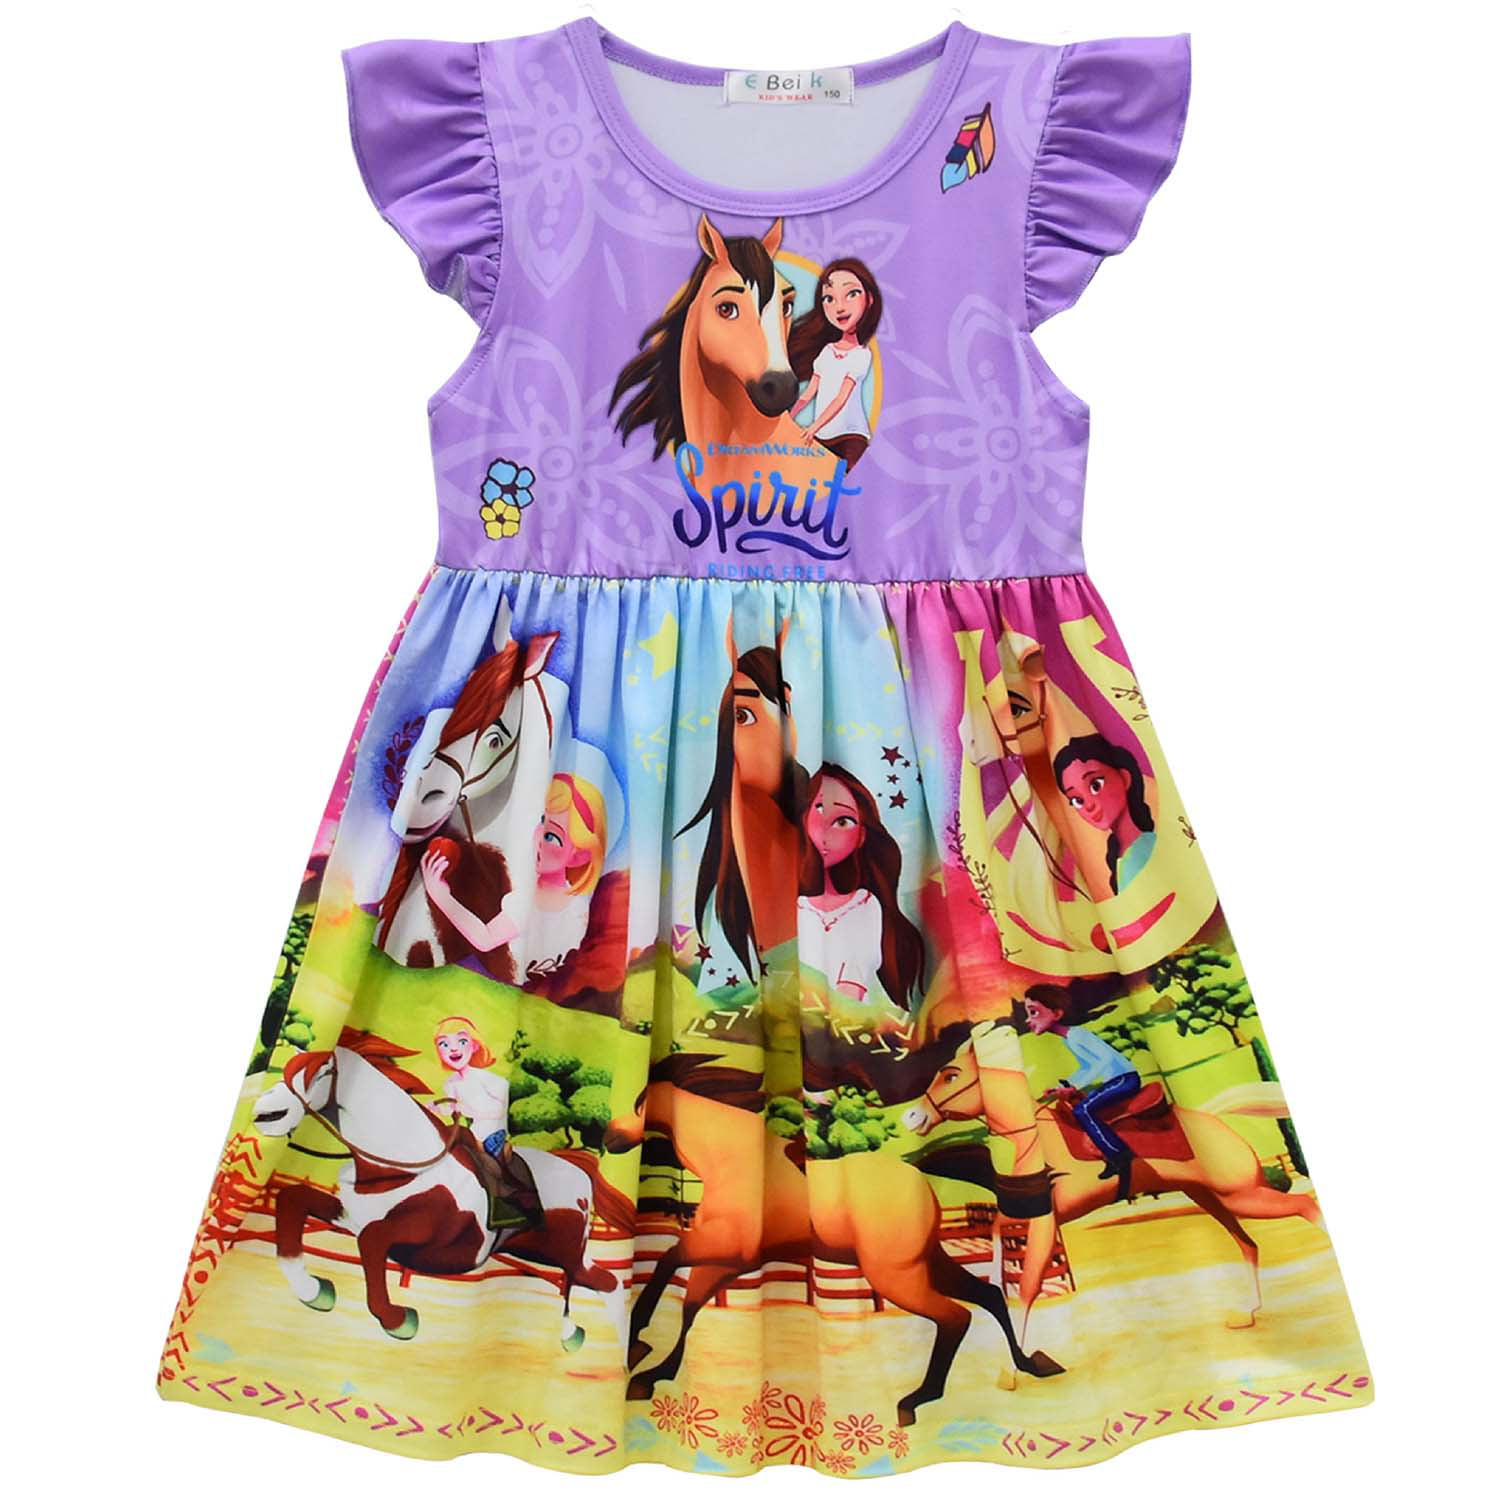 Toddler Girls Princess Dress Little Kids Summer Cartoon Print Casual Shirtdress